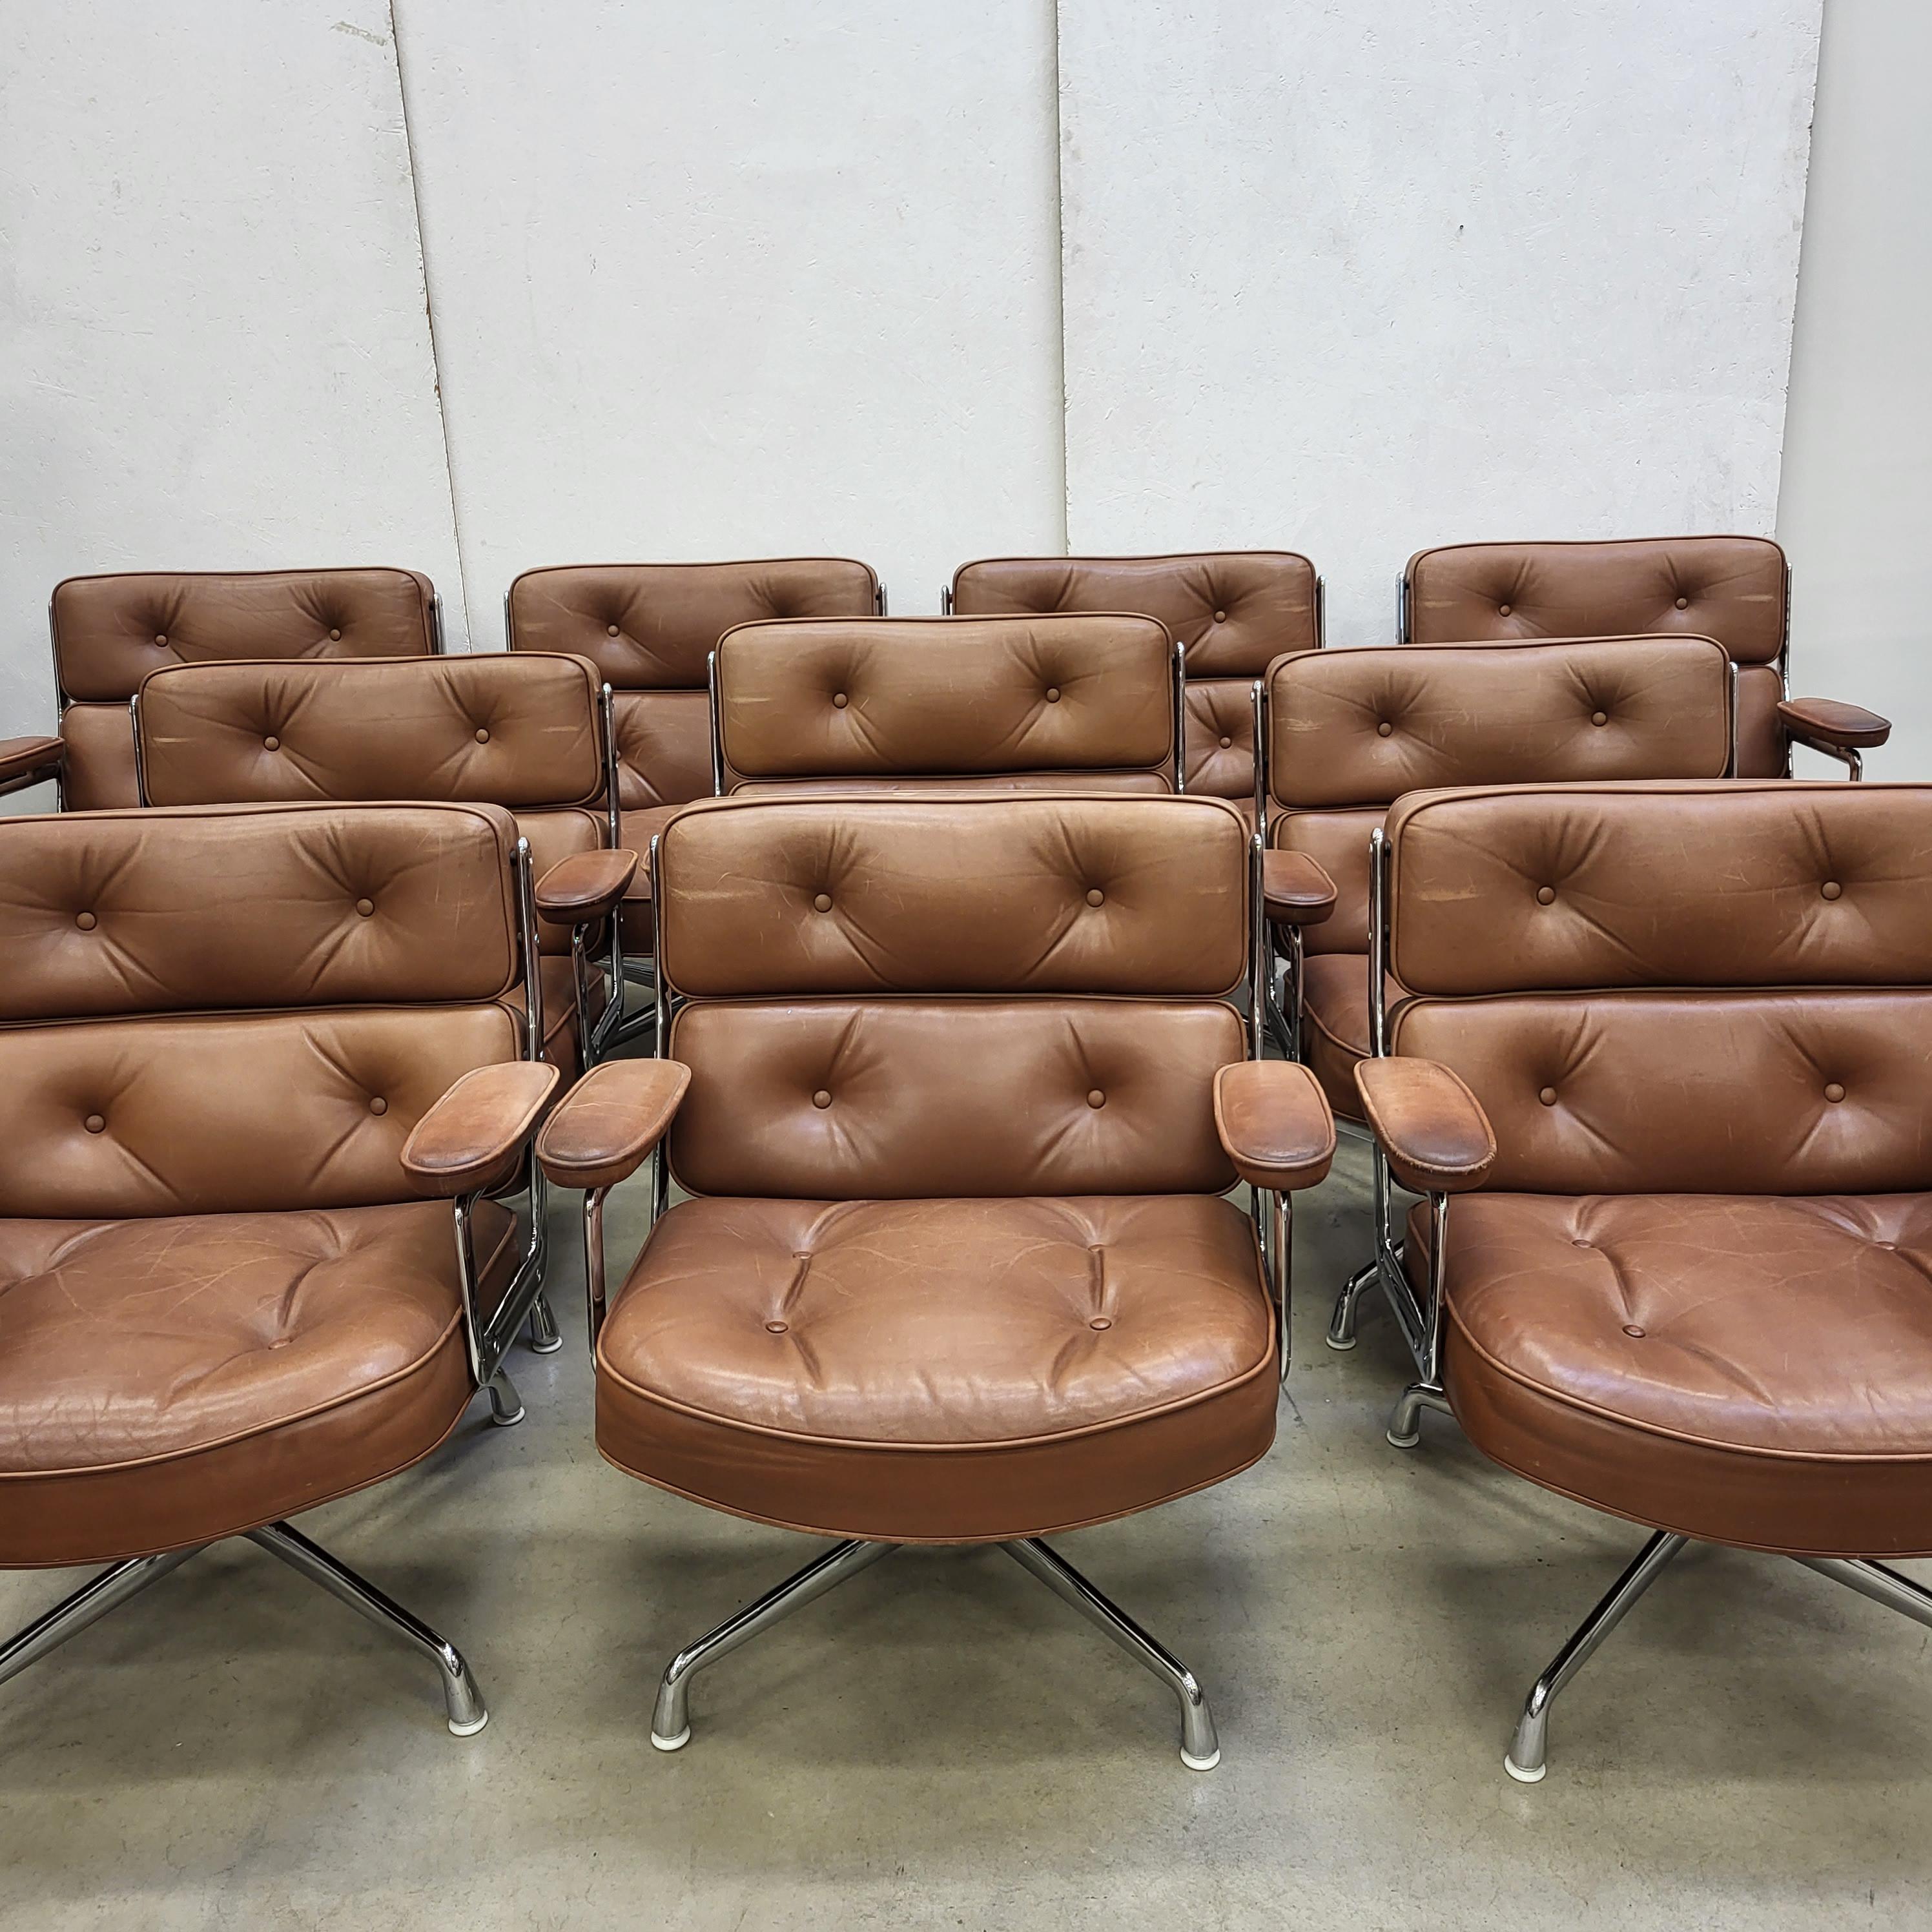 Seltener Satz von 10 Time life Lobby Chair Modell ES105 hergestellt von Vitra/Herman Miller. 
Die Stühle haben ein verchromtes Aluminiumgestell auf einem verchromten Aluminiumfuß.
Seltene und wunderschöne Farbkombination und die breitere